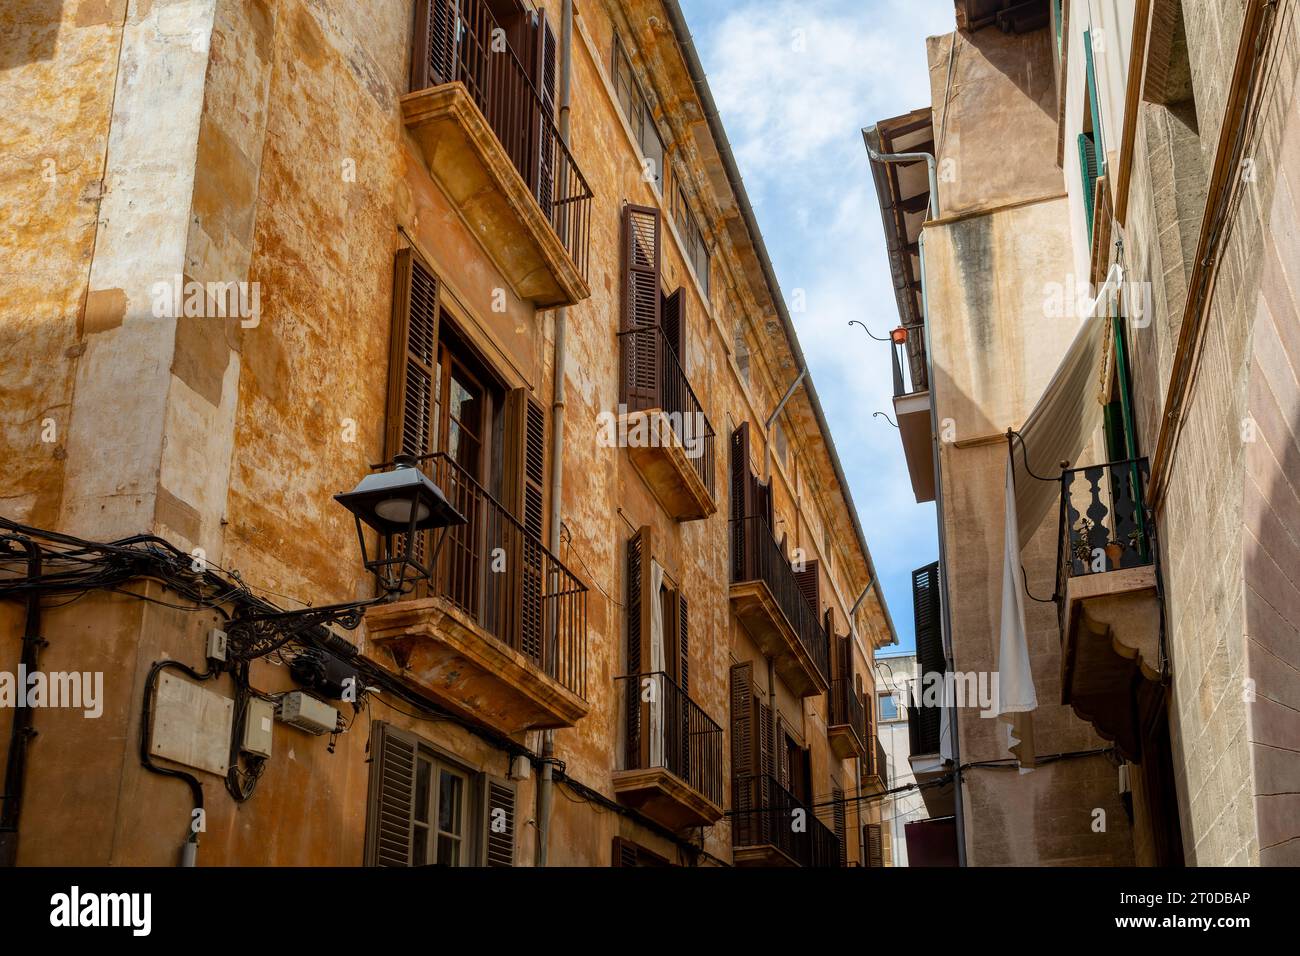 Eine idyllische Szene der Altstadt von Palma de Mallorca, eine leere, enge Straße mit alten Fassaden, die den zeitlosen Charme dieses mediterranen Juwels bewahrt Stockfoto